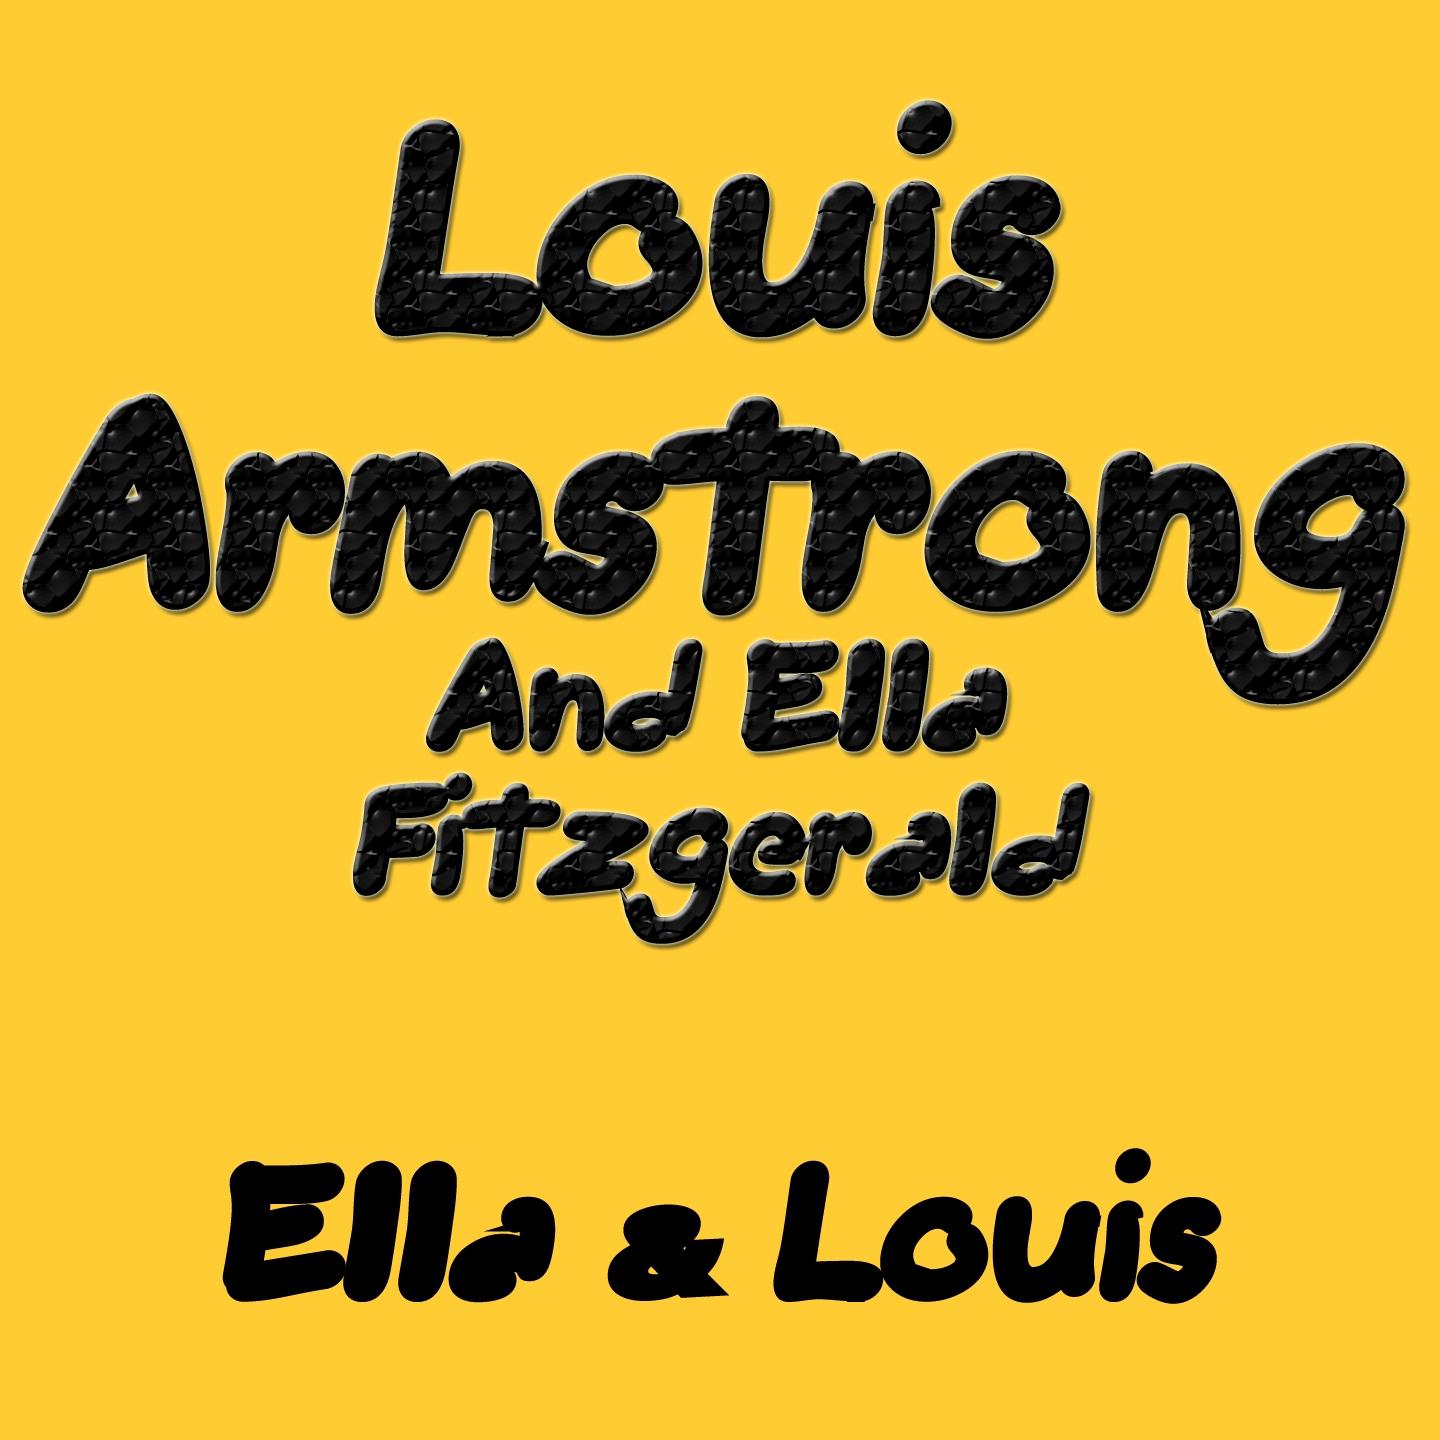 Ella & Louis